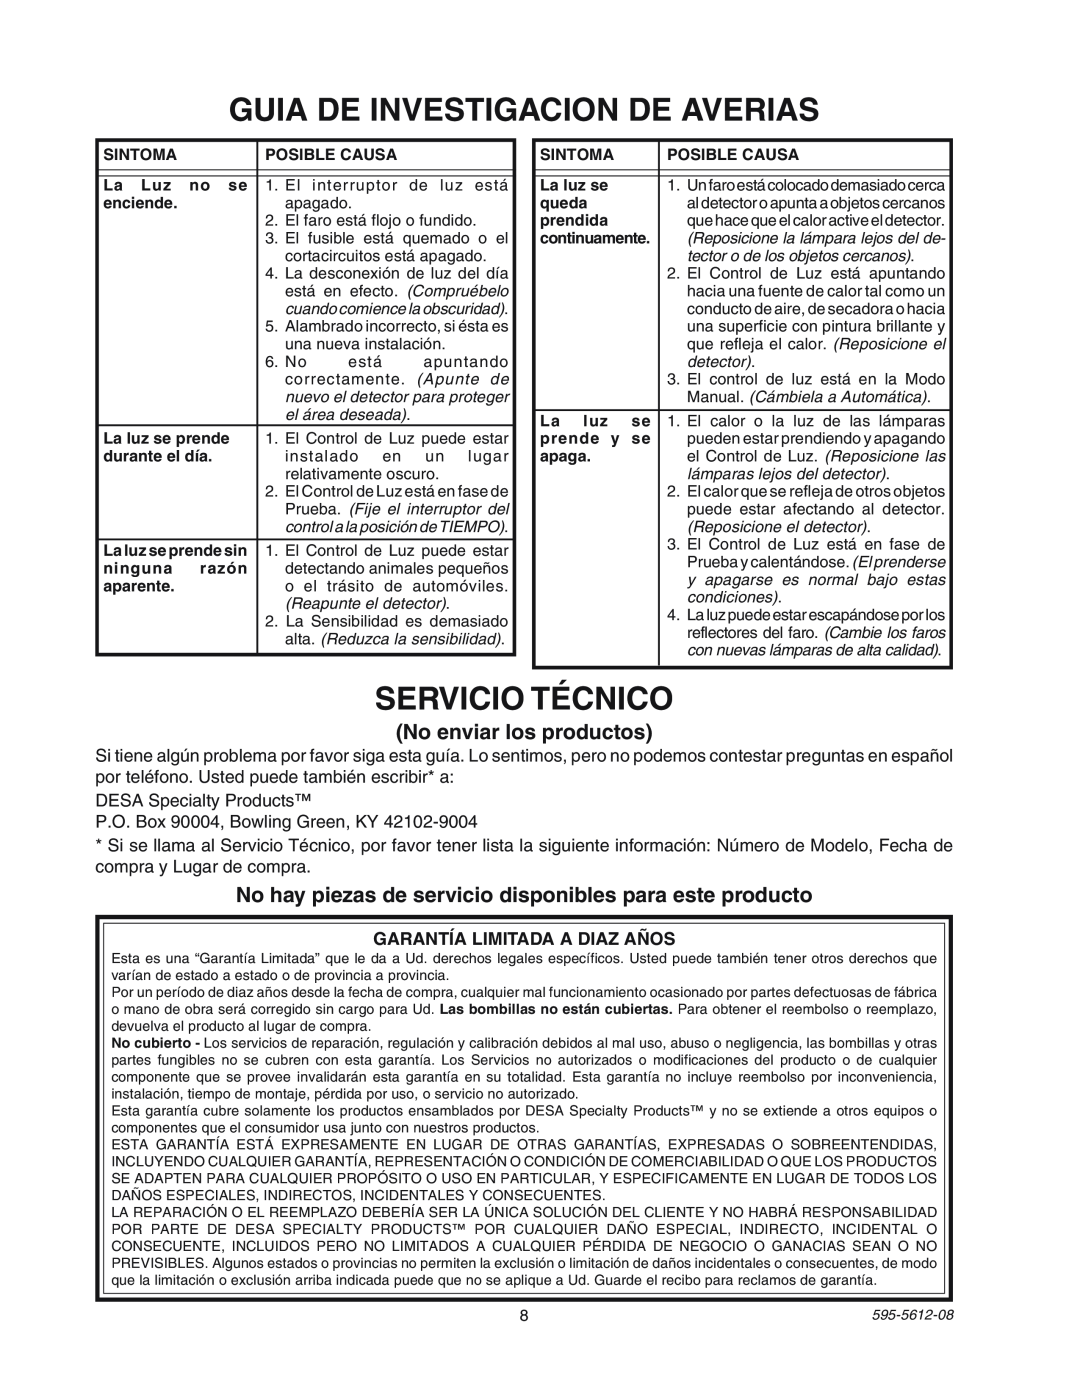 Heath Zenith SL-9525 manual Guia De Investigacion De Averias, SERVICIO TƒCNICO, No enviar los productos 